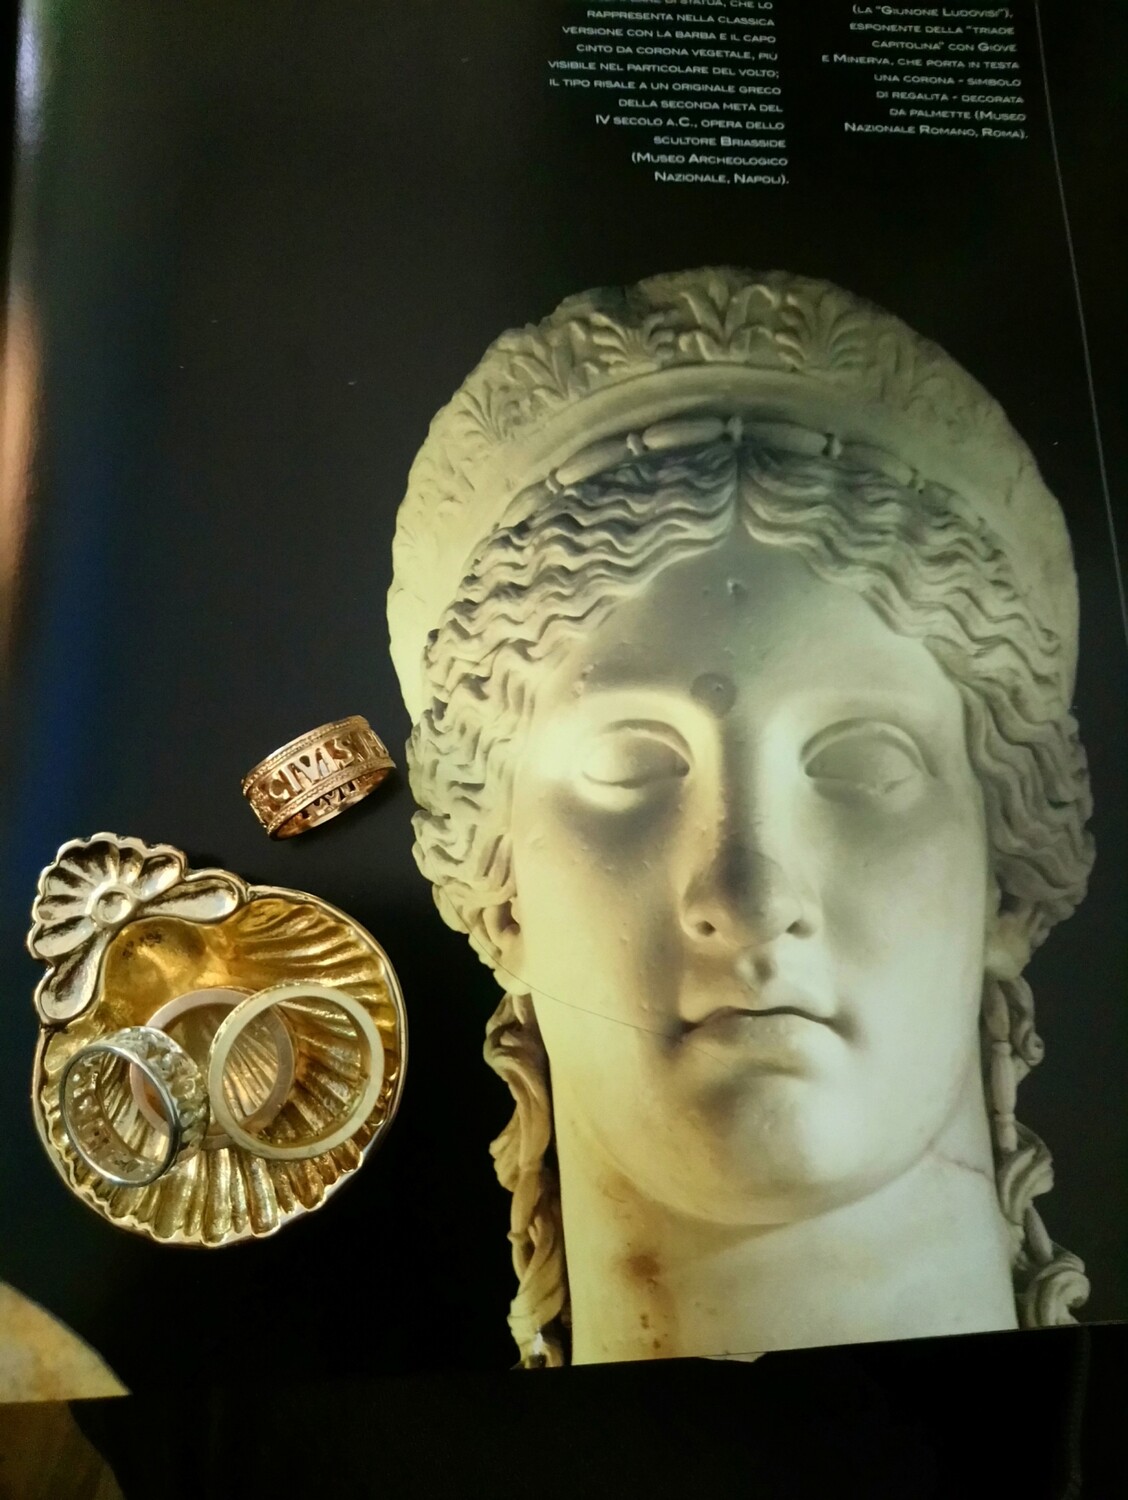 CIVIS ROMANUS SUM, anello in bronzo, Roma, impero romano.